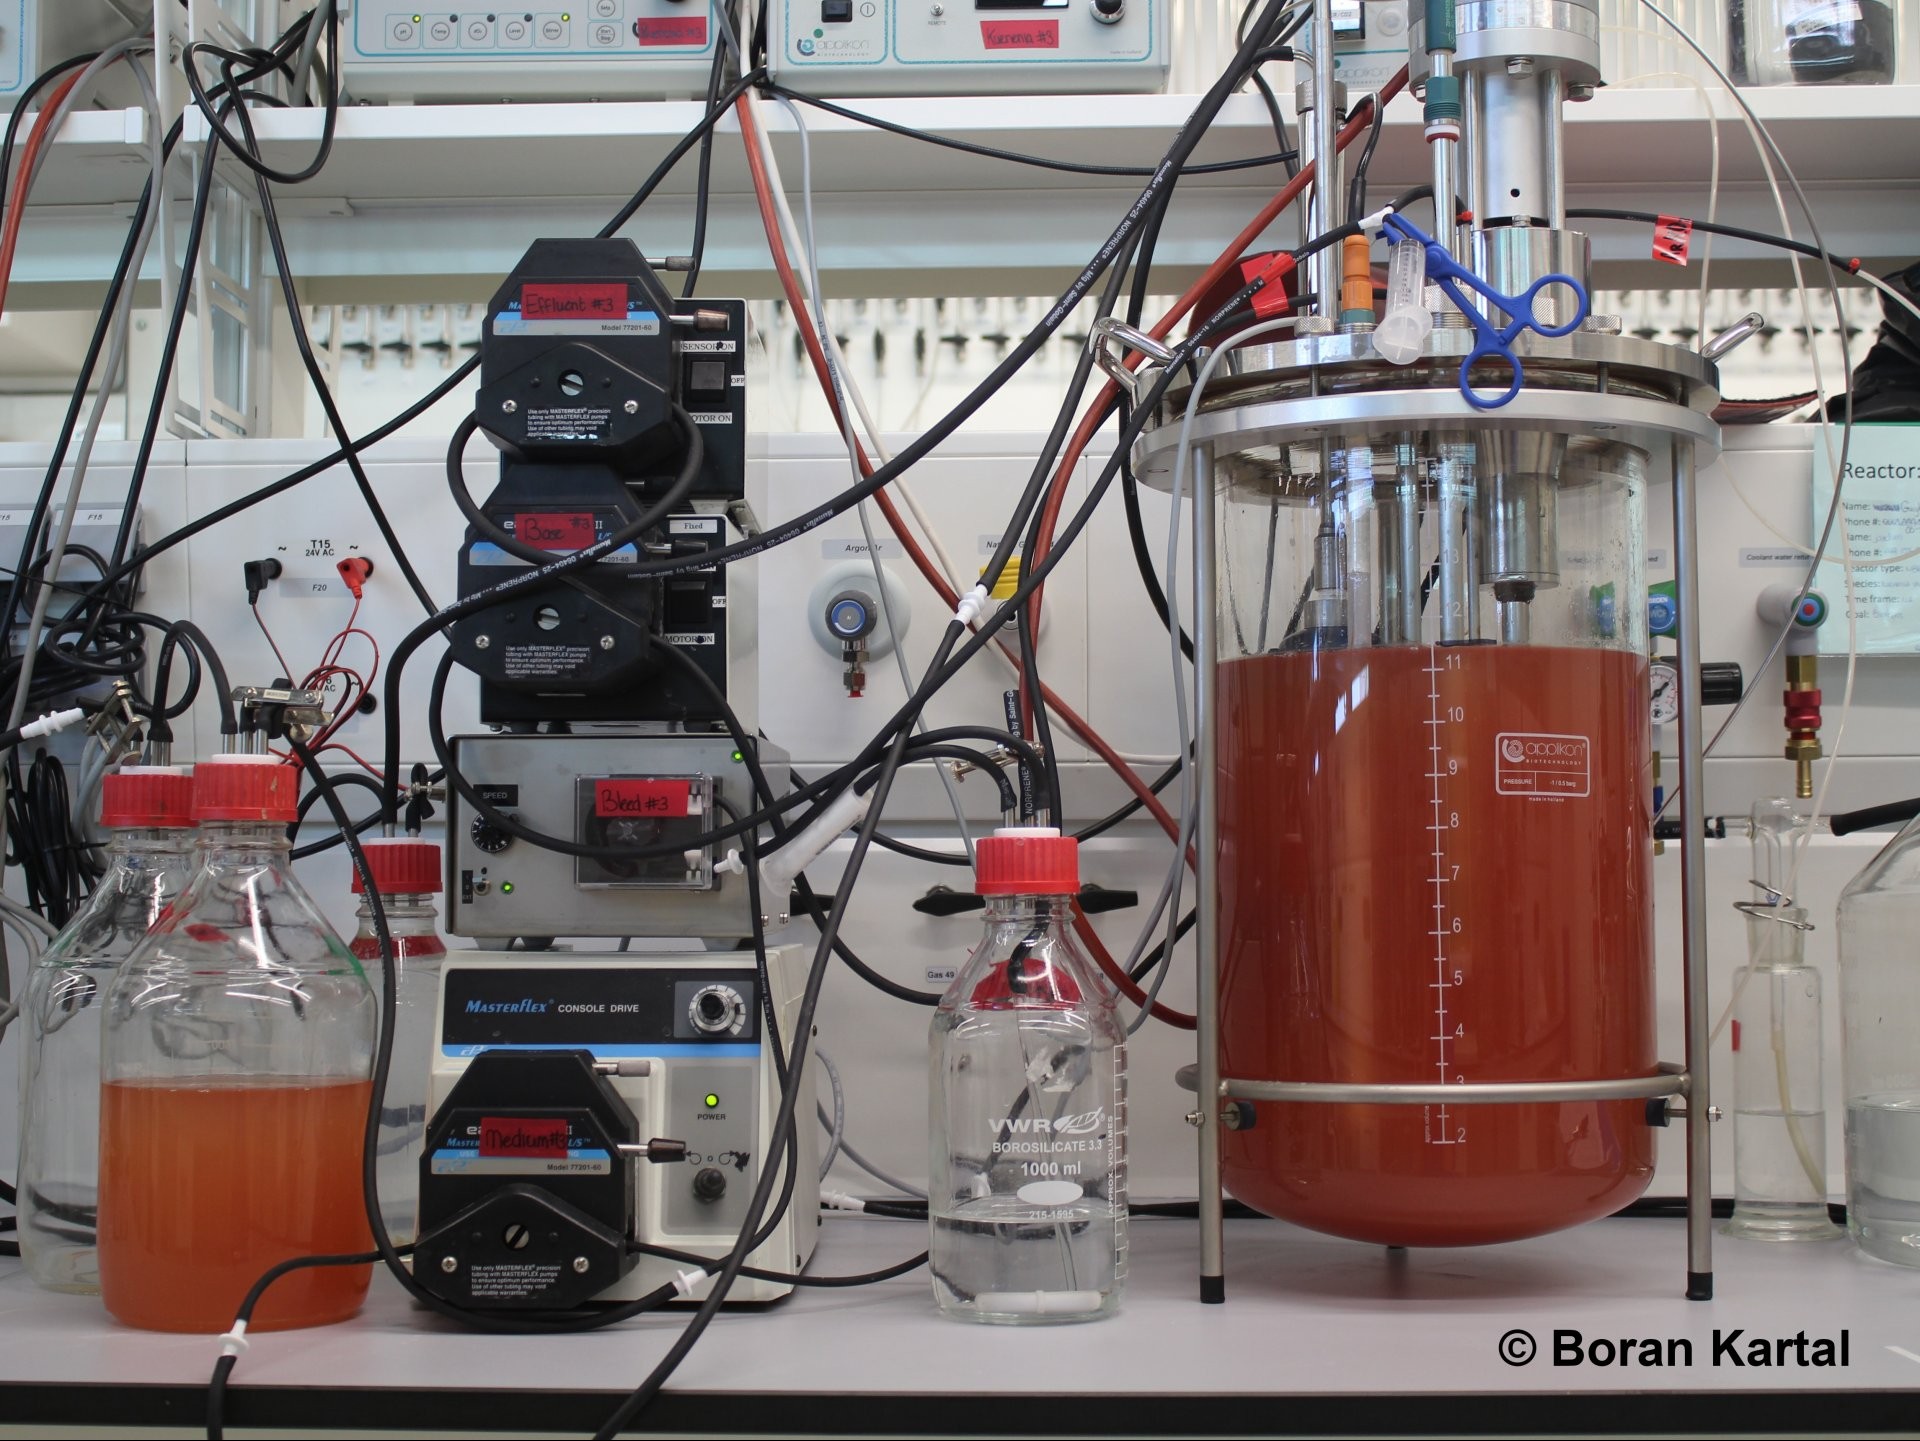 Einer der Bioreaktoren, mit denen Kartal und seine KollegInnen Zellen von K. stuttgartiensis im Labor züchteten. Die leuchtend rote Farbe entsteht durch eisenhaltige Cytochrom-C-Proteine in den Zellen. Anammox-Bakterien sind mit diesen Proteinen voll gepackt. Dazu gehören auch die Enzyme, die wichtige Reaktionen des Anammox-Prozesses durchführen und die Zellen auffällig rot färben. © Boran Kartal